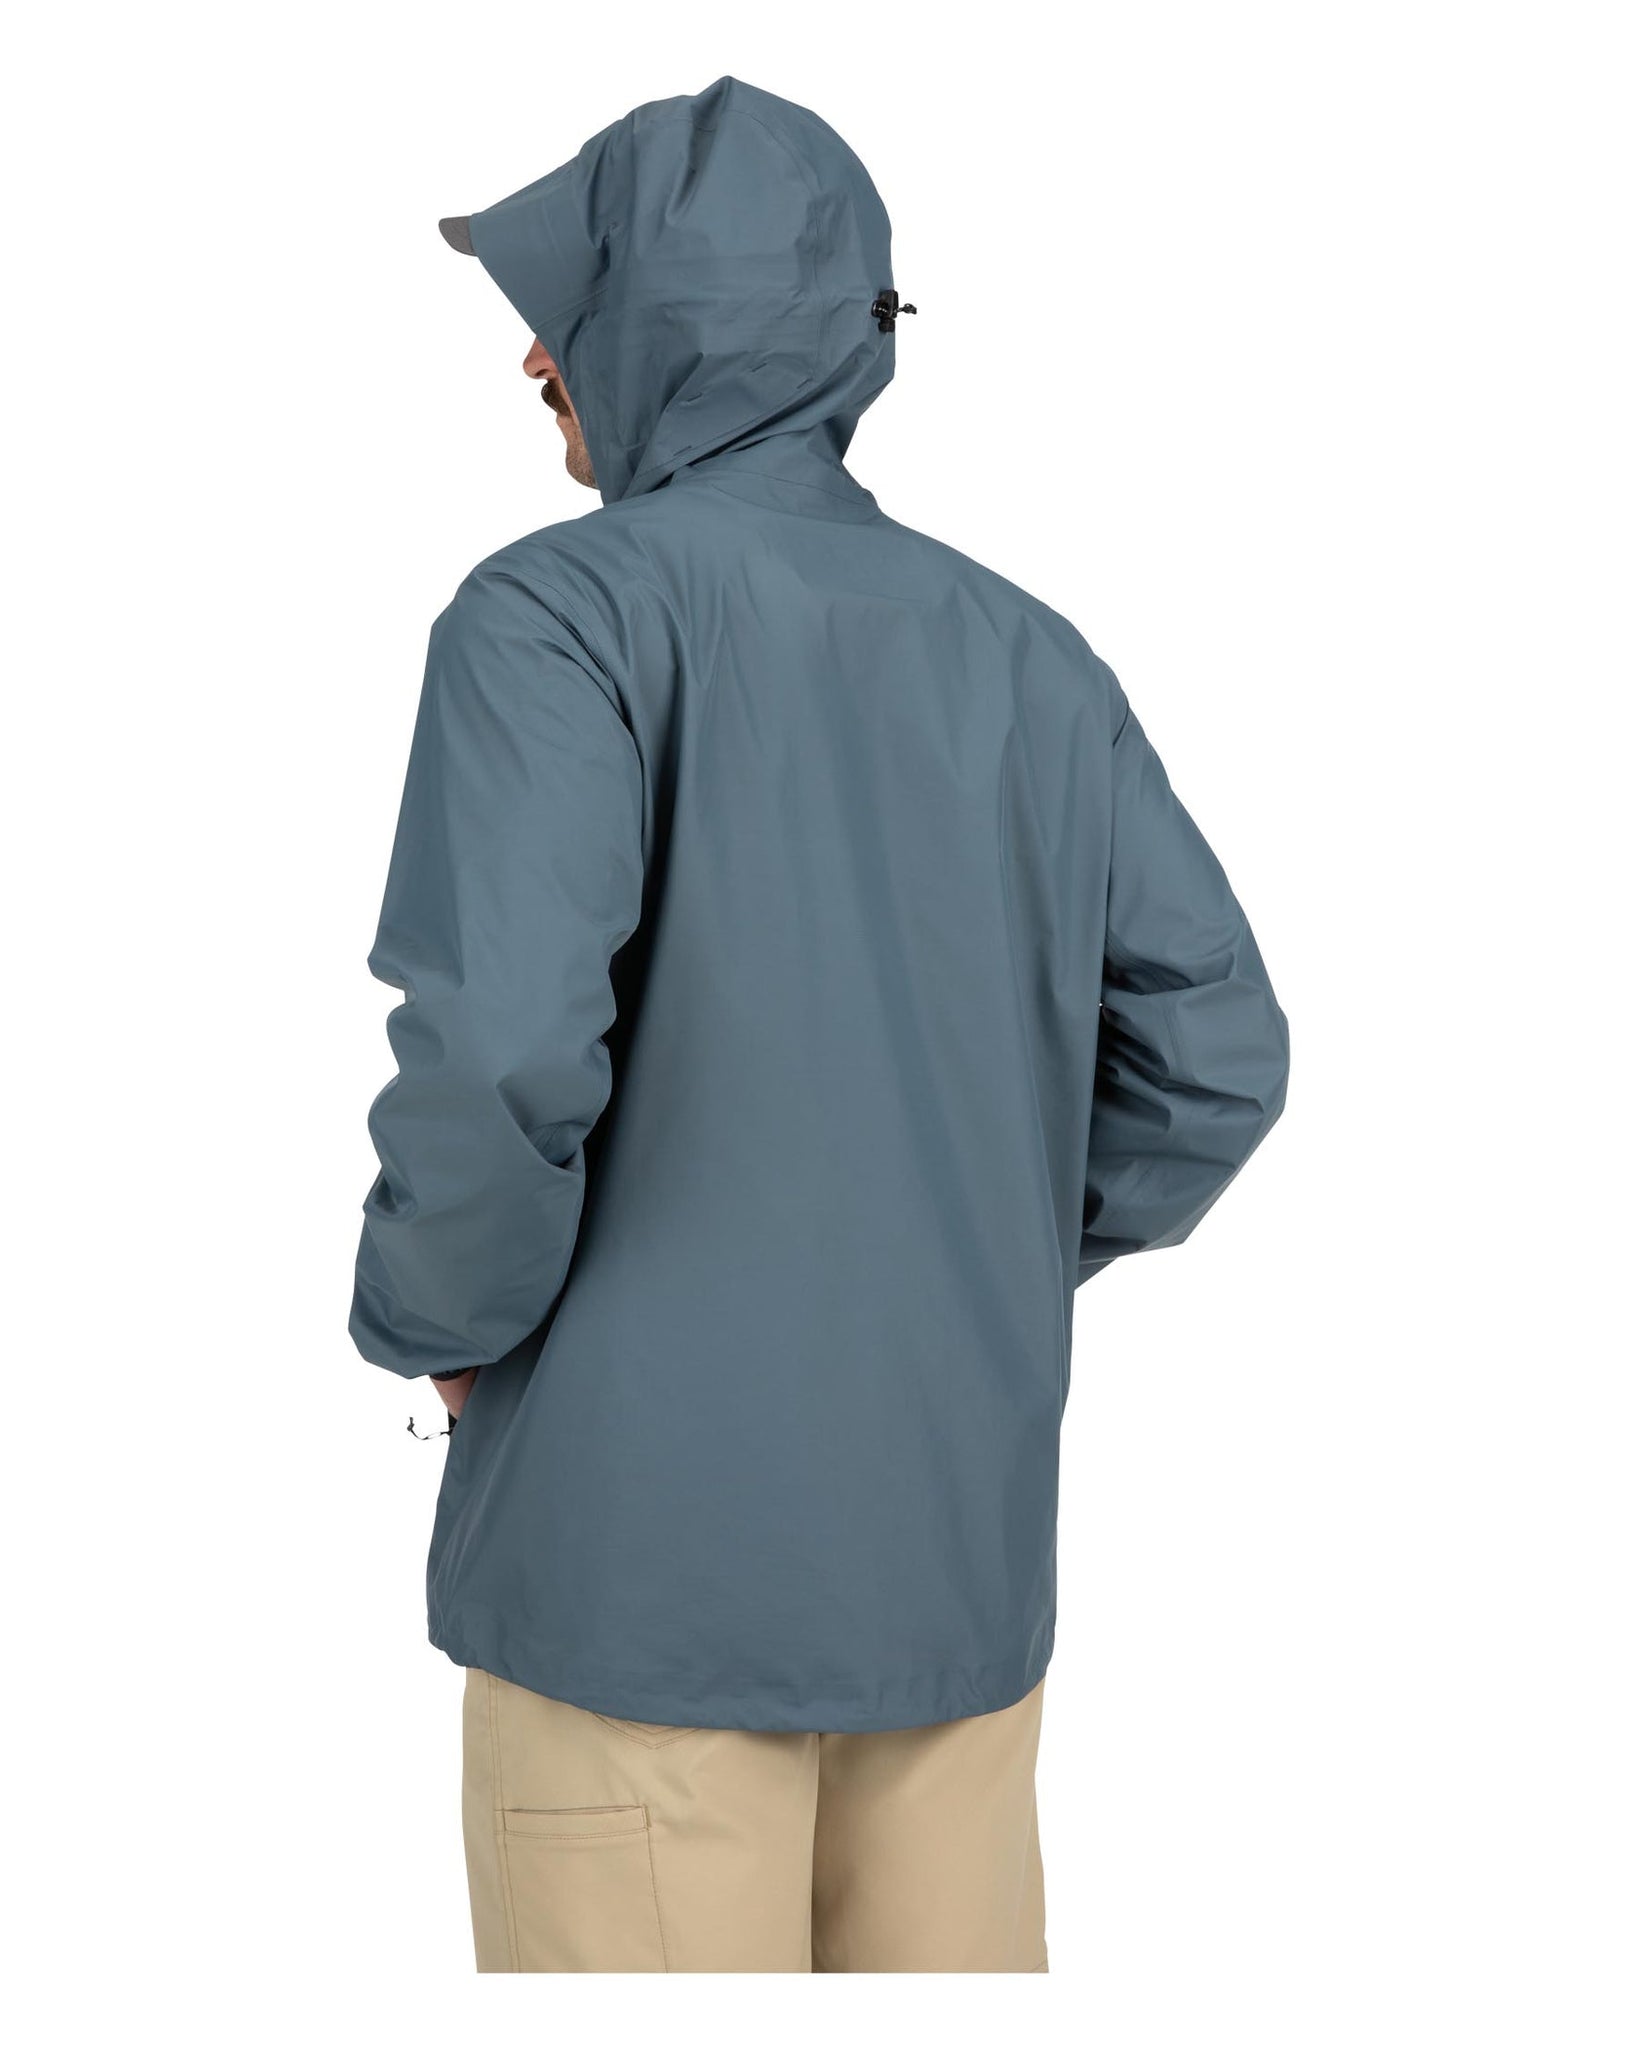 Fishing Waterproof Jacket - 500 Grey - Pebble grey, Light grey